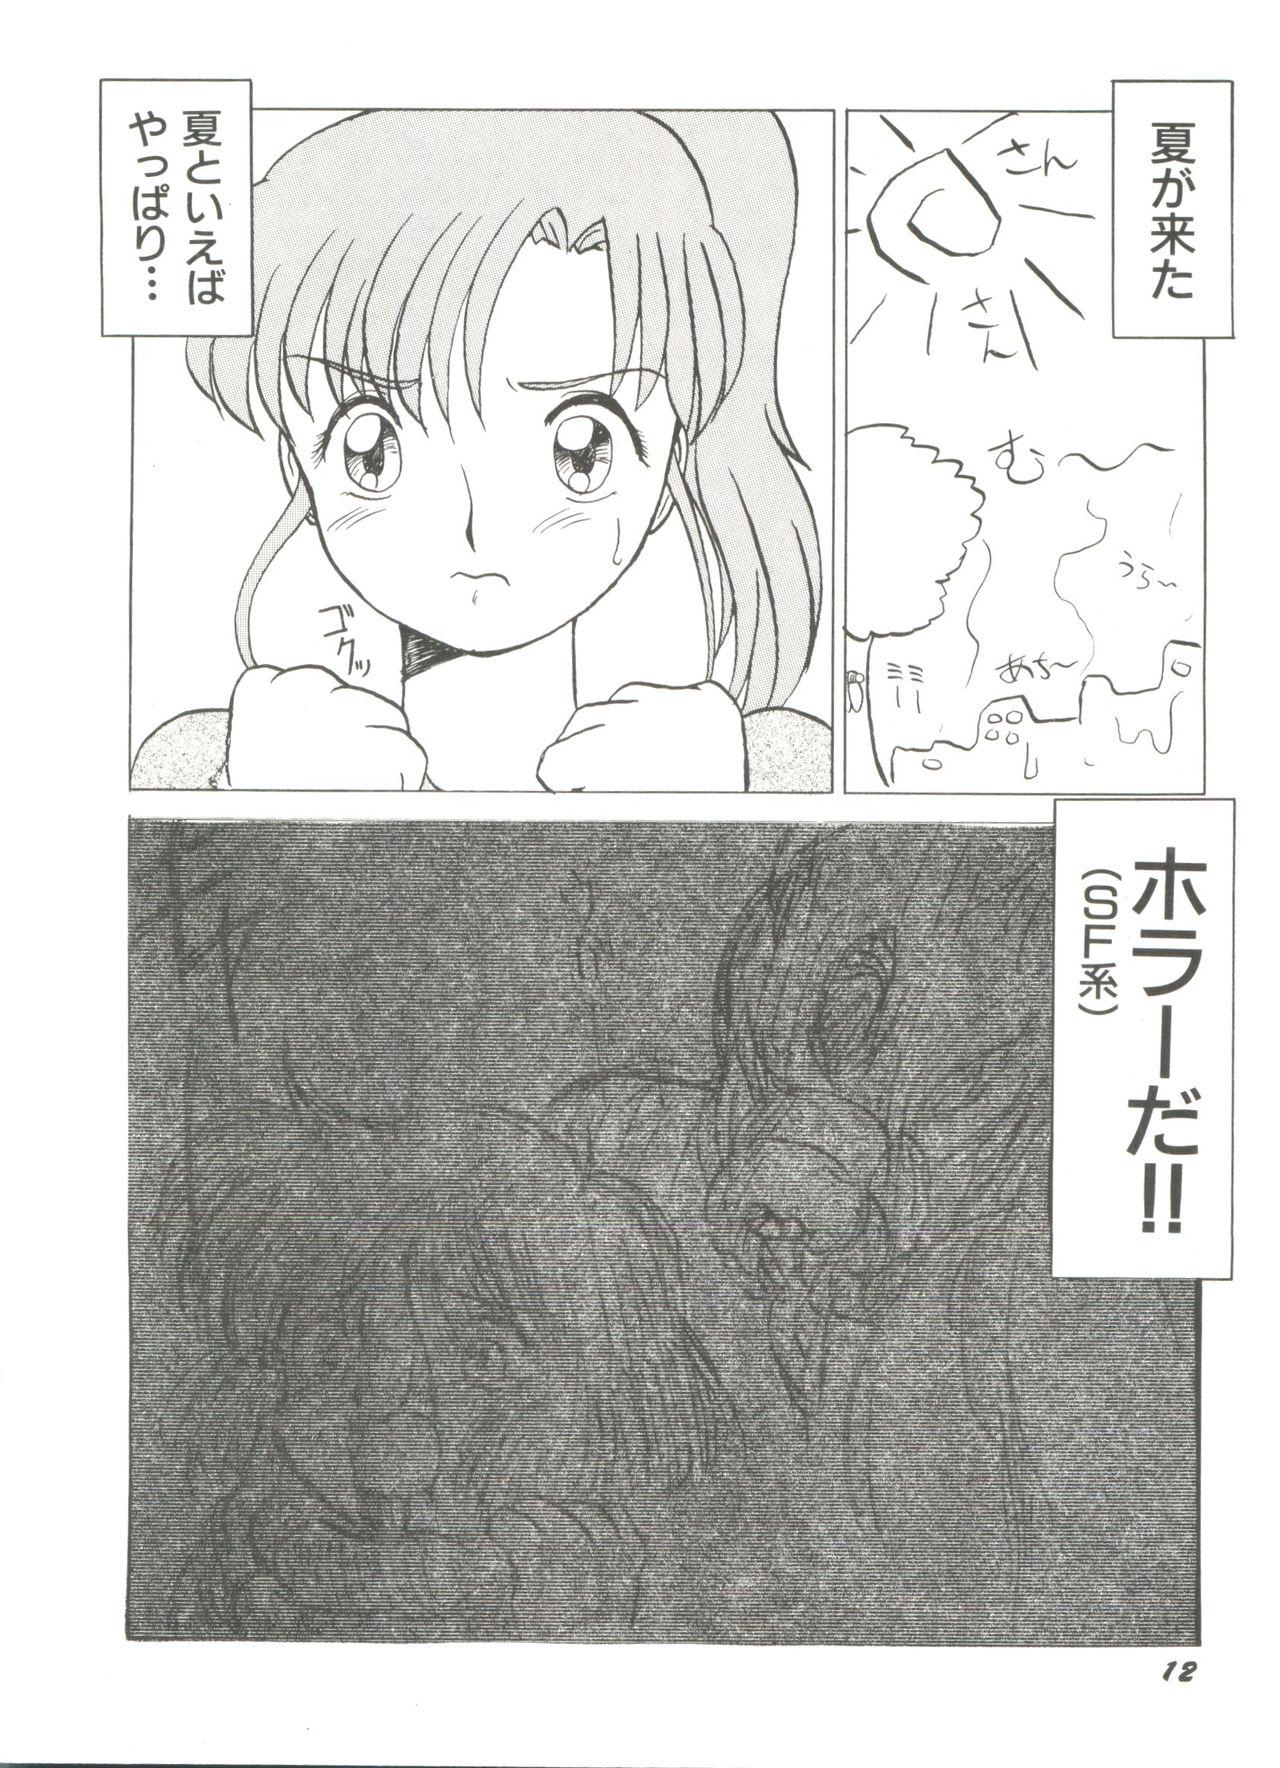 Bishoujo Doujinshi Anthology 8 - Moon Paradise 5 Tsuki no Rakuen 16